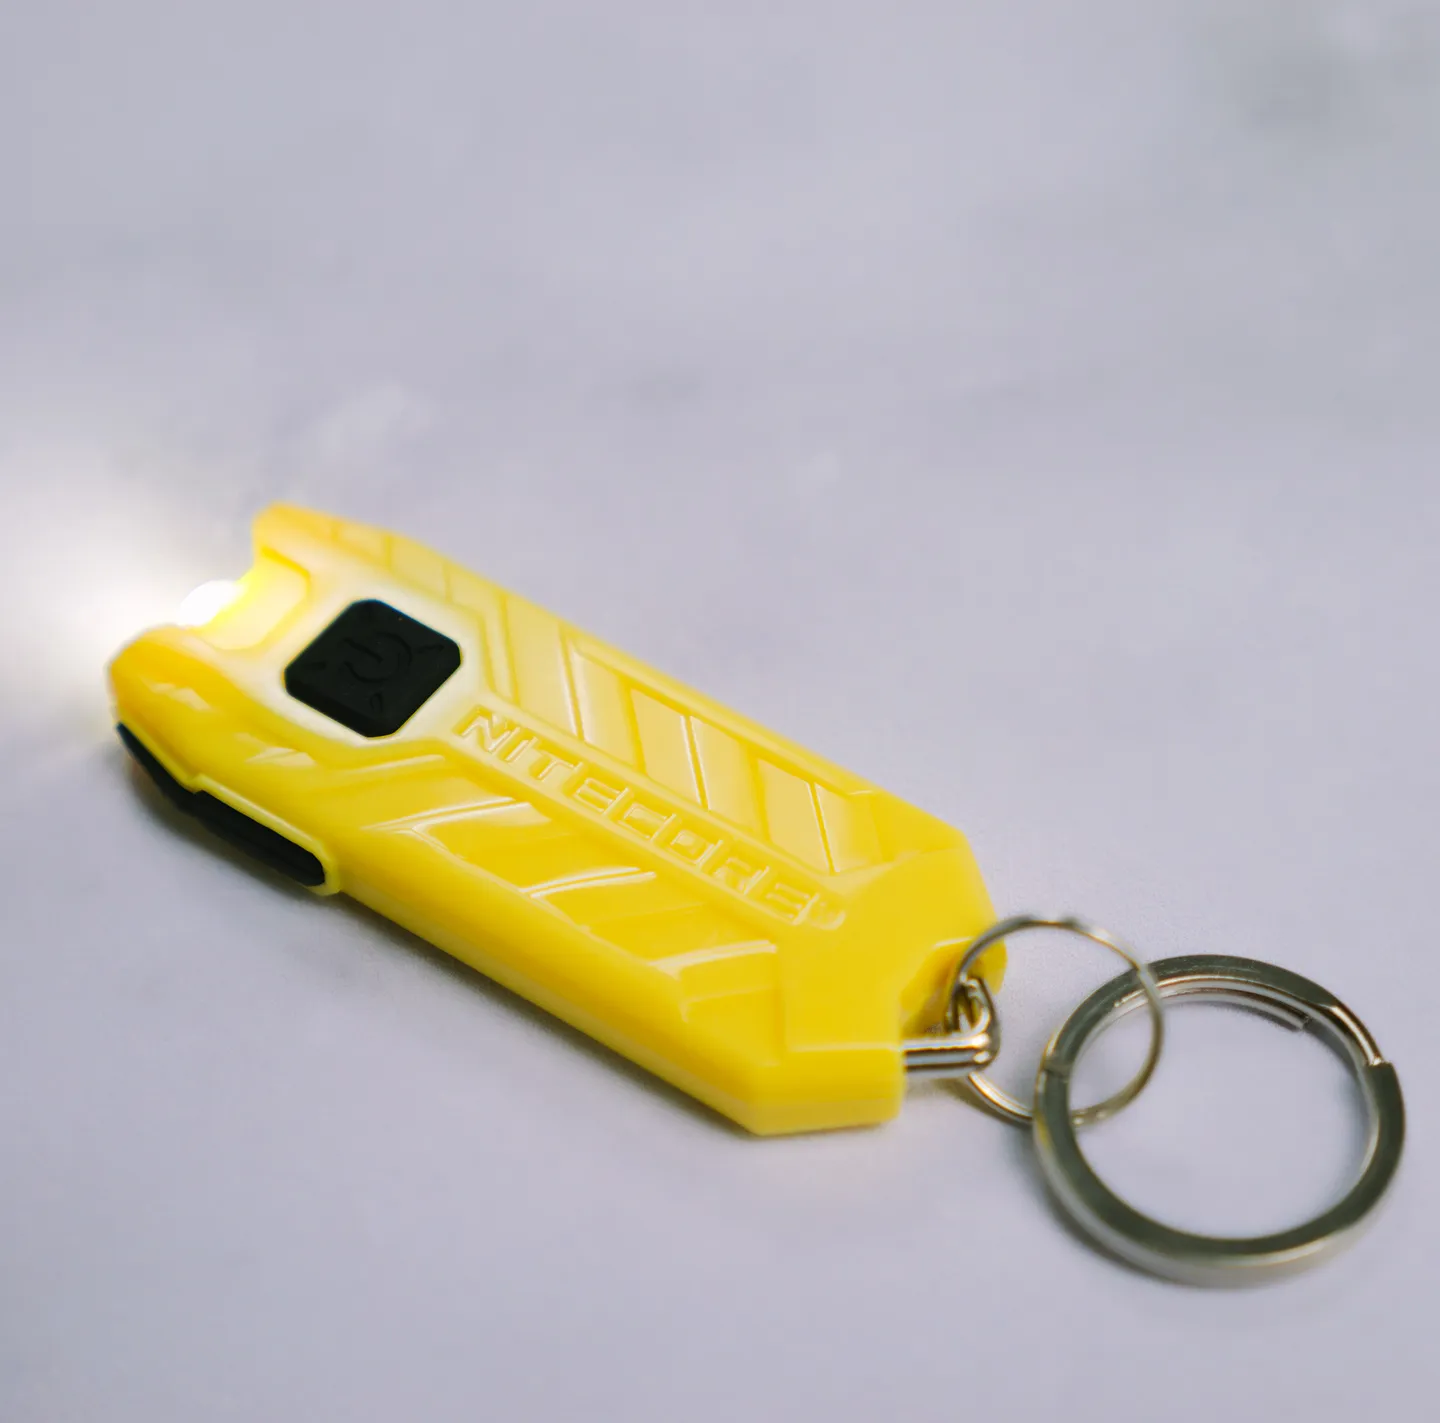 Alarme et Lampe Torche - Lampe de protection rechargeable Tube jaune citron